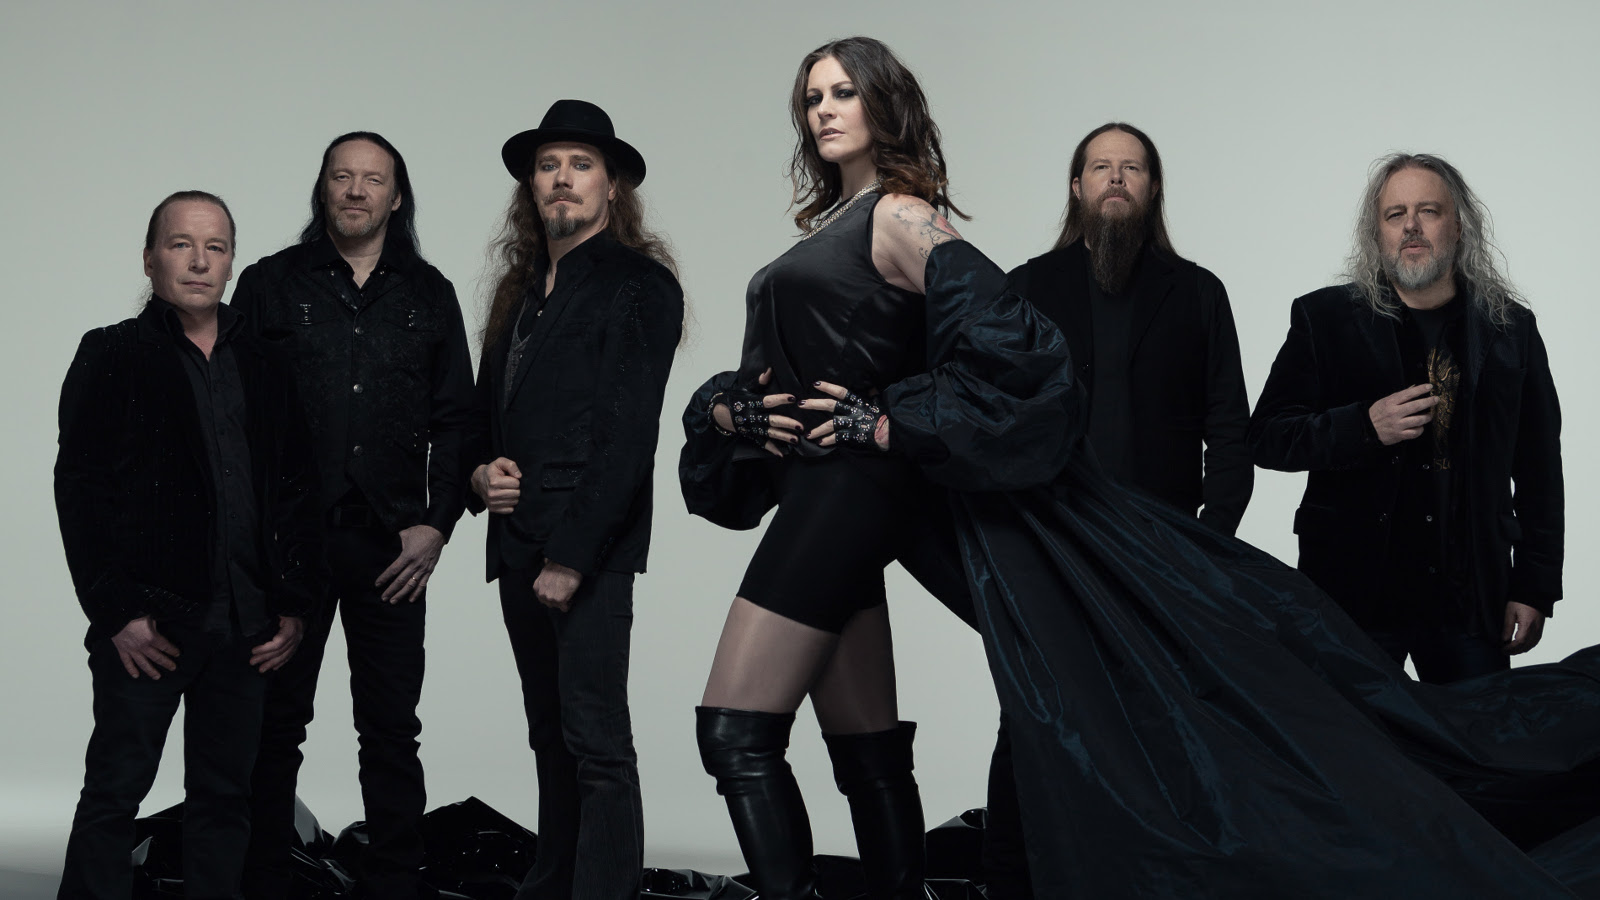 Kuvassa on seisomassa Nightwishin viisi miesjäsentä taaempana ja naisjäsen keskellä edessä. Kaikilla on mustat vaatteen päällään. Tausta on harmaa.